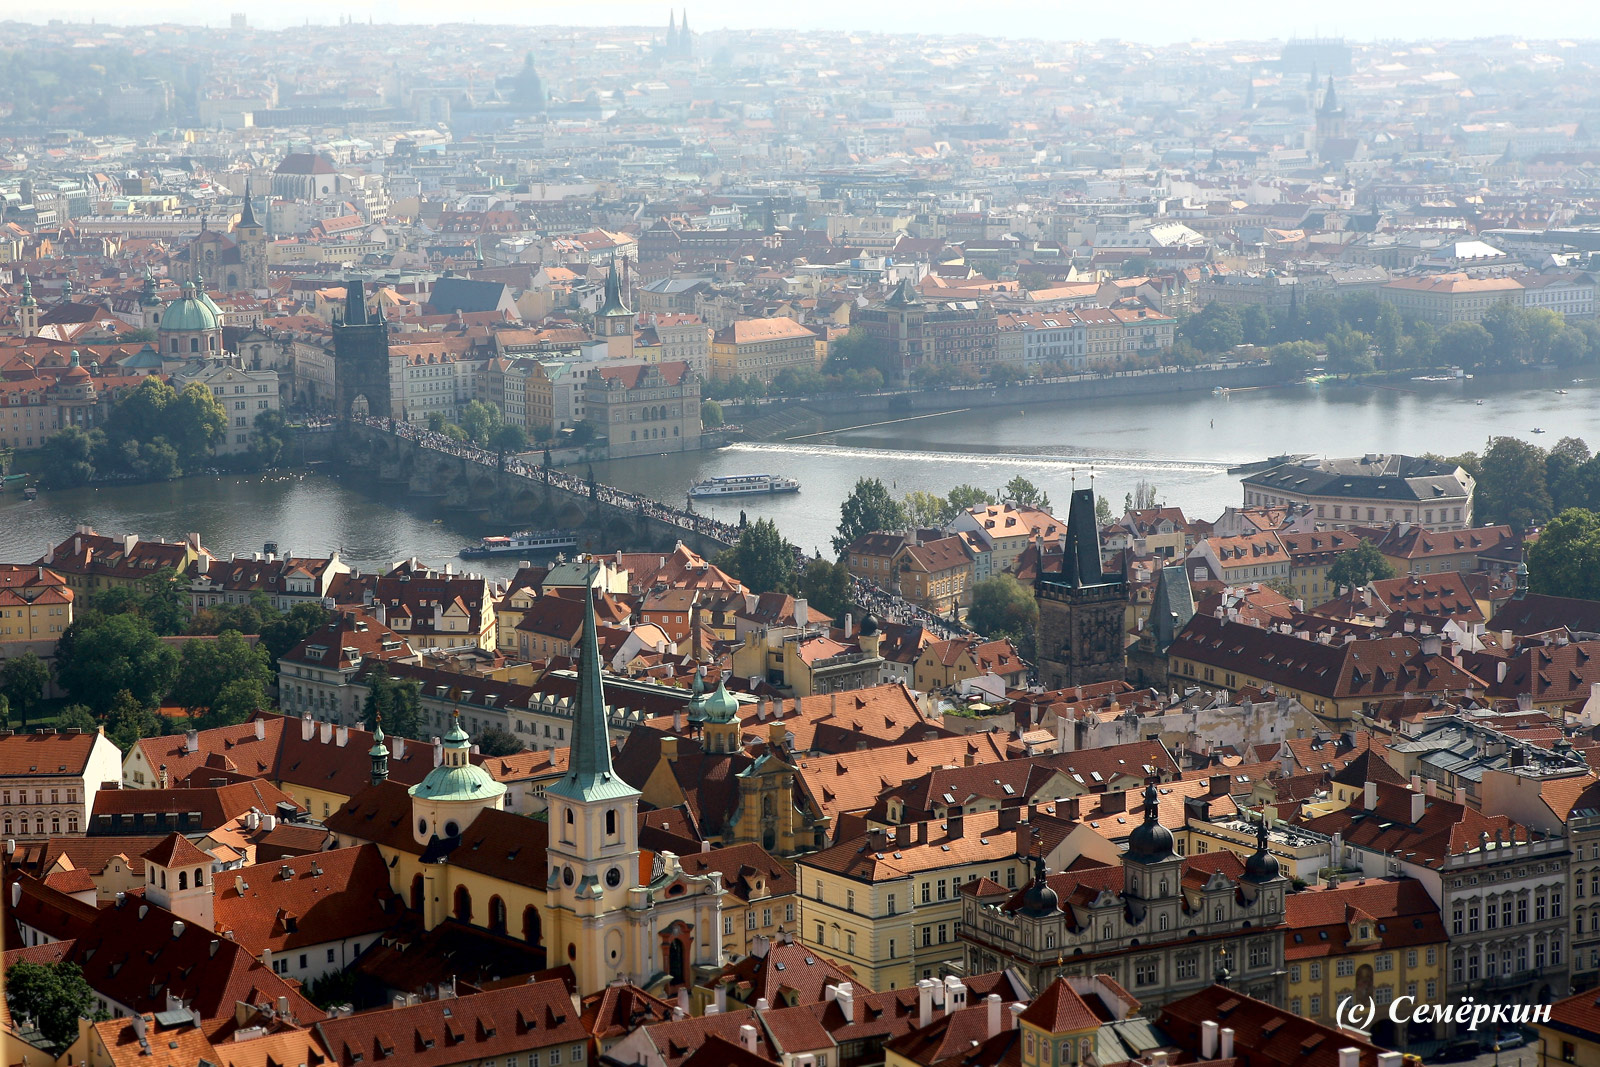  Панорамы Праги с башни собора Святого Вита - Карлов мост сверху.